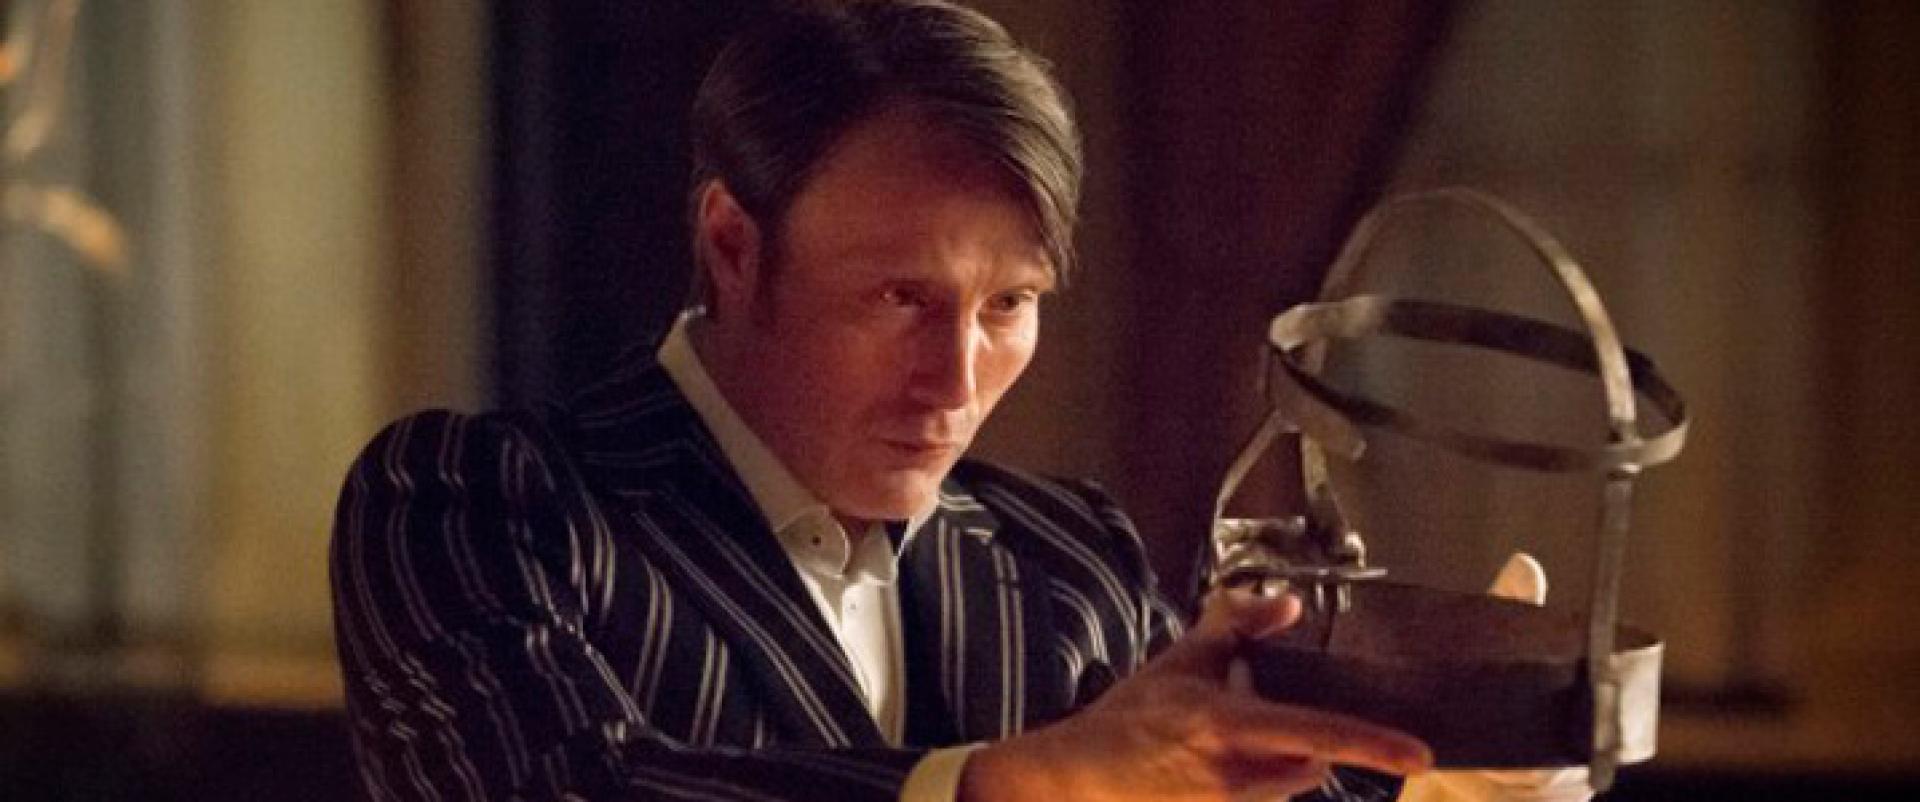 Hannibal, 3. évad: újabb trailer